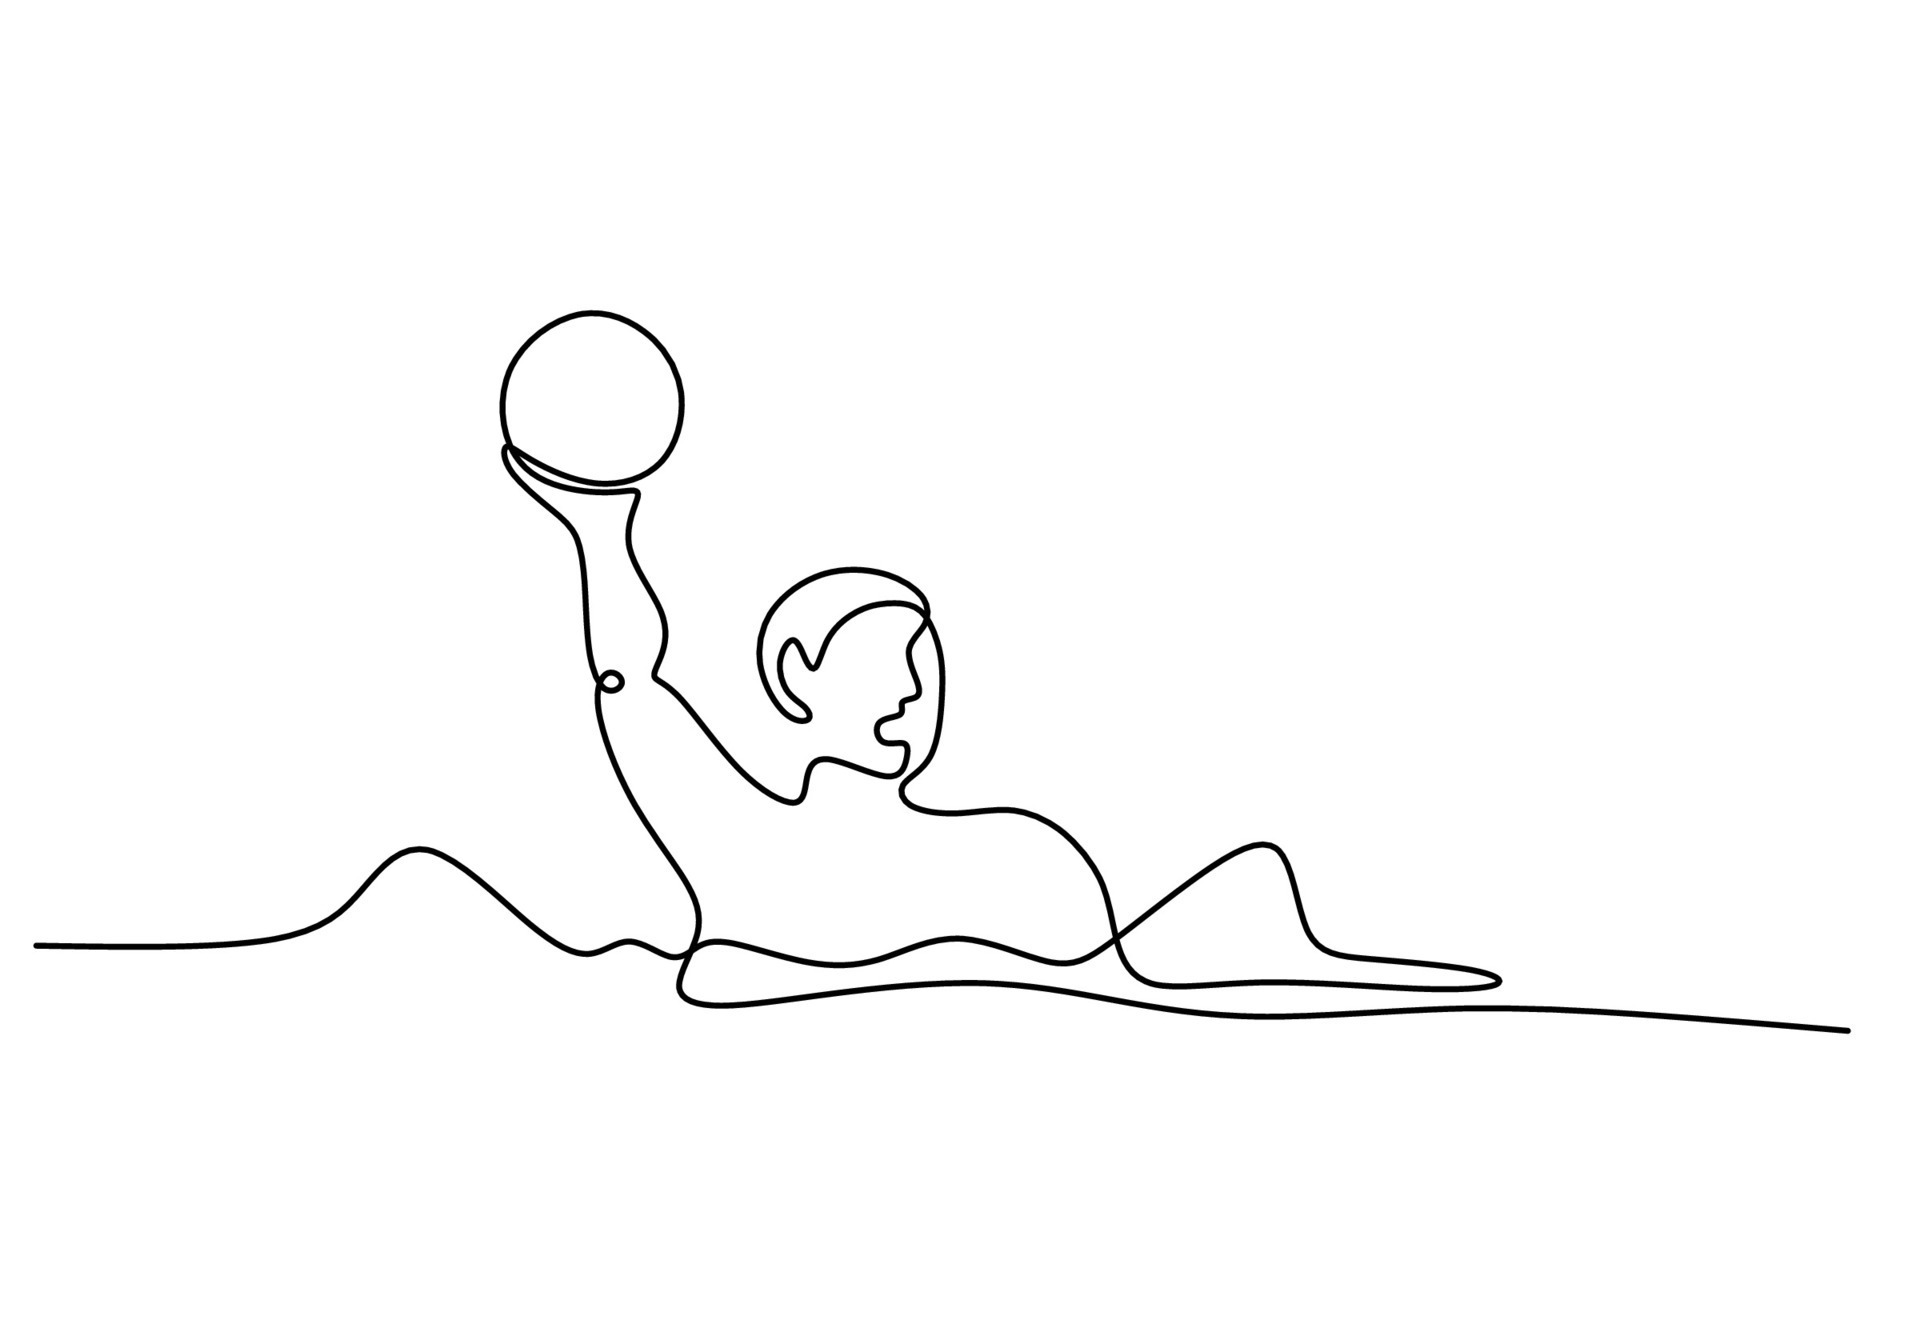 Wasser Polo Ball einer Linie Zeichnung kontinuierlich Hand gezeichnet Sport  Thema 25681235 Vektor Kunst bei Vecteezy